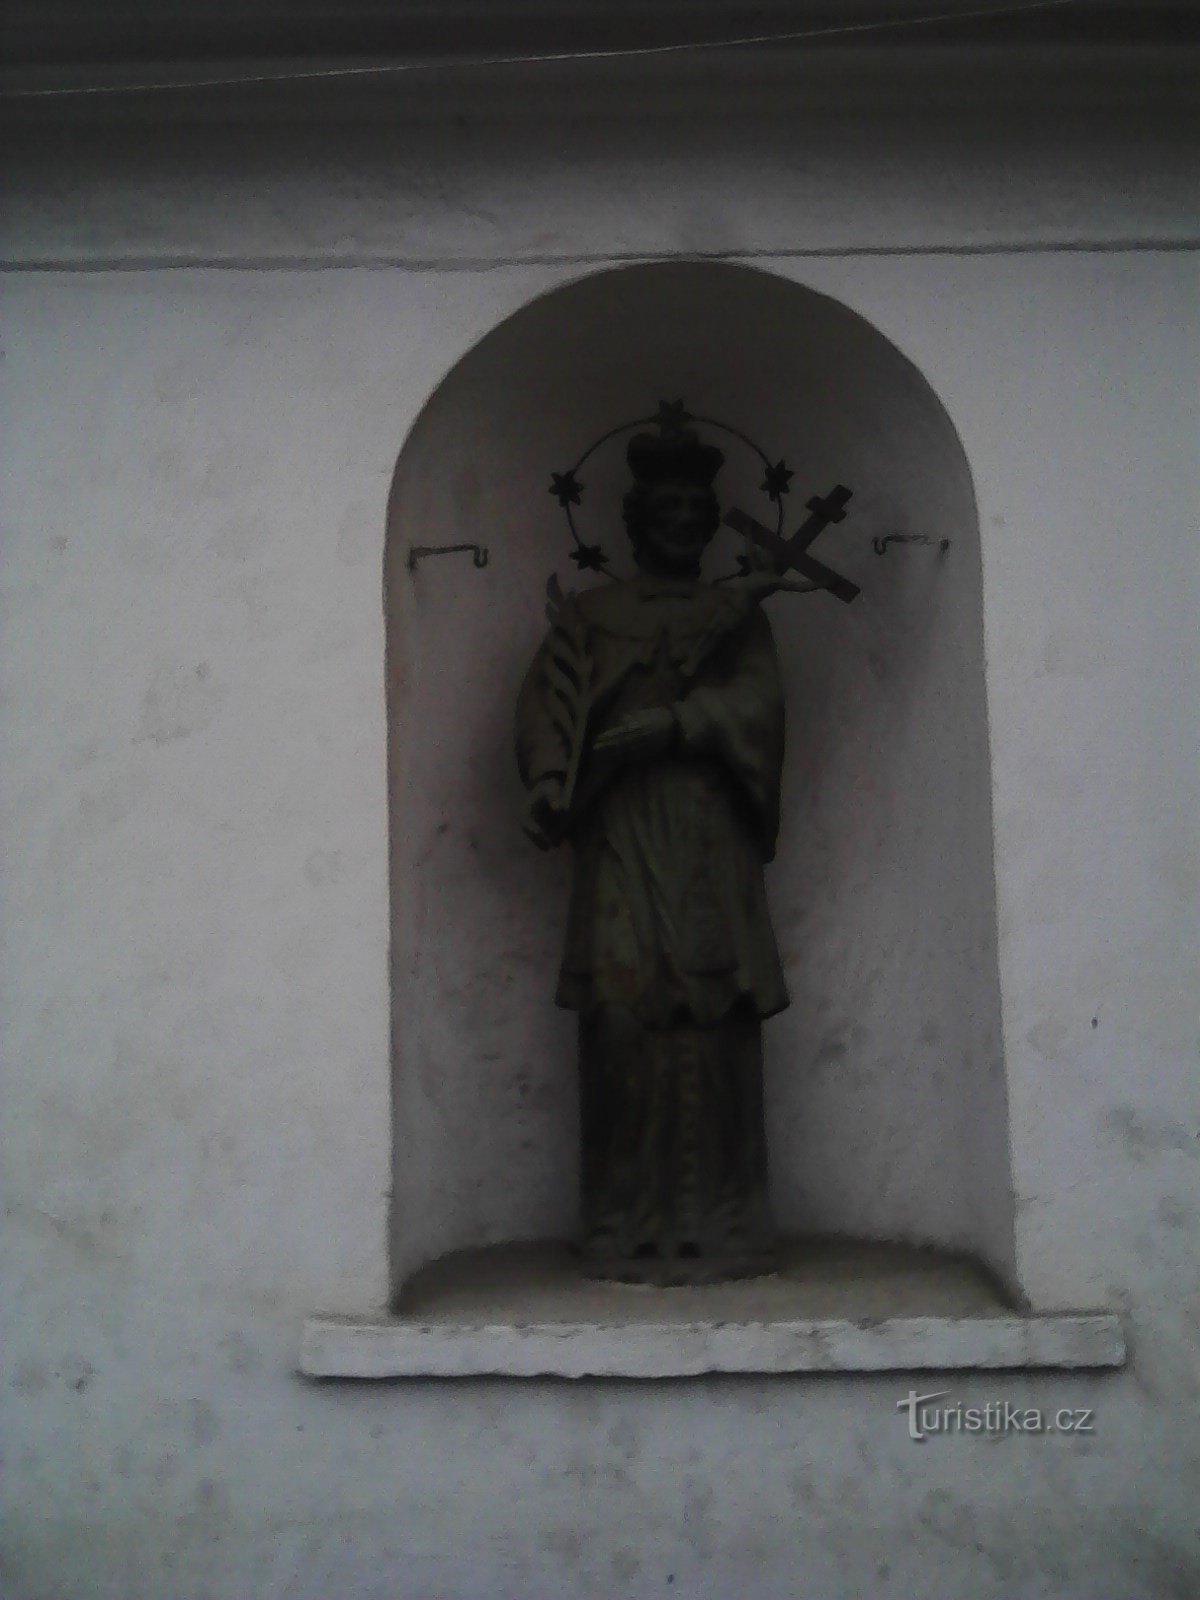 2. En staty av helgonet på ett hus i Obratani.